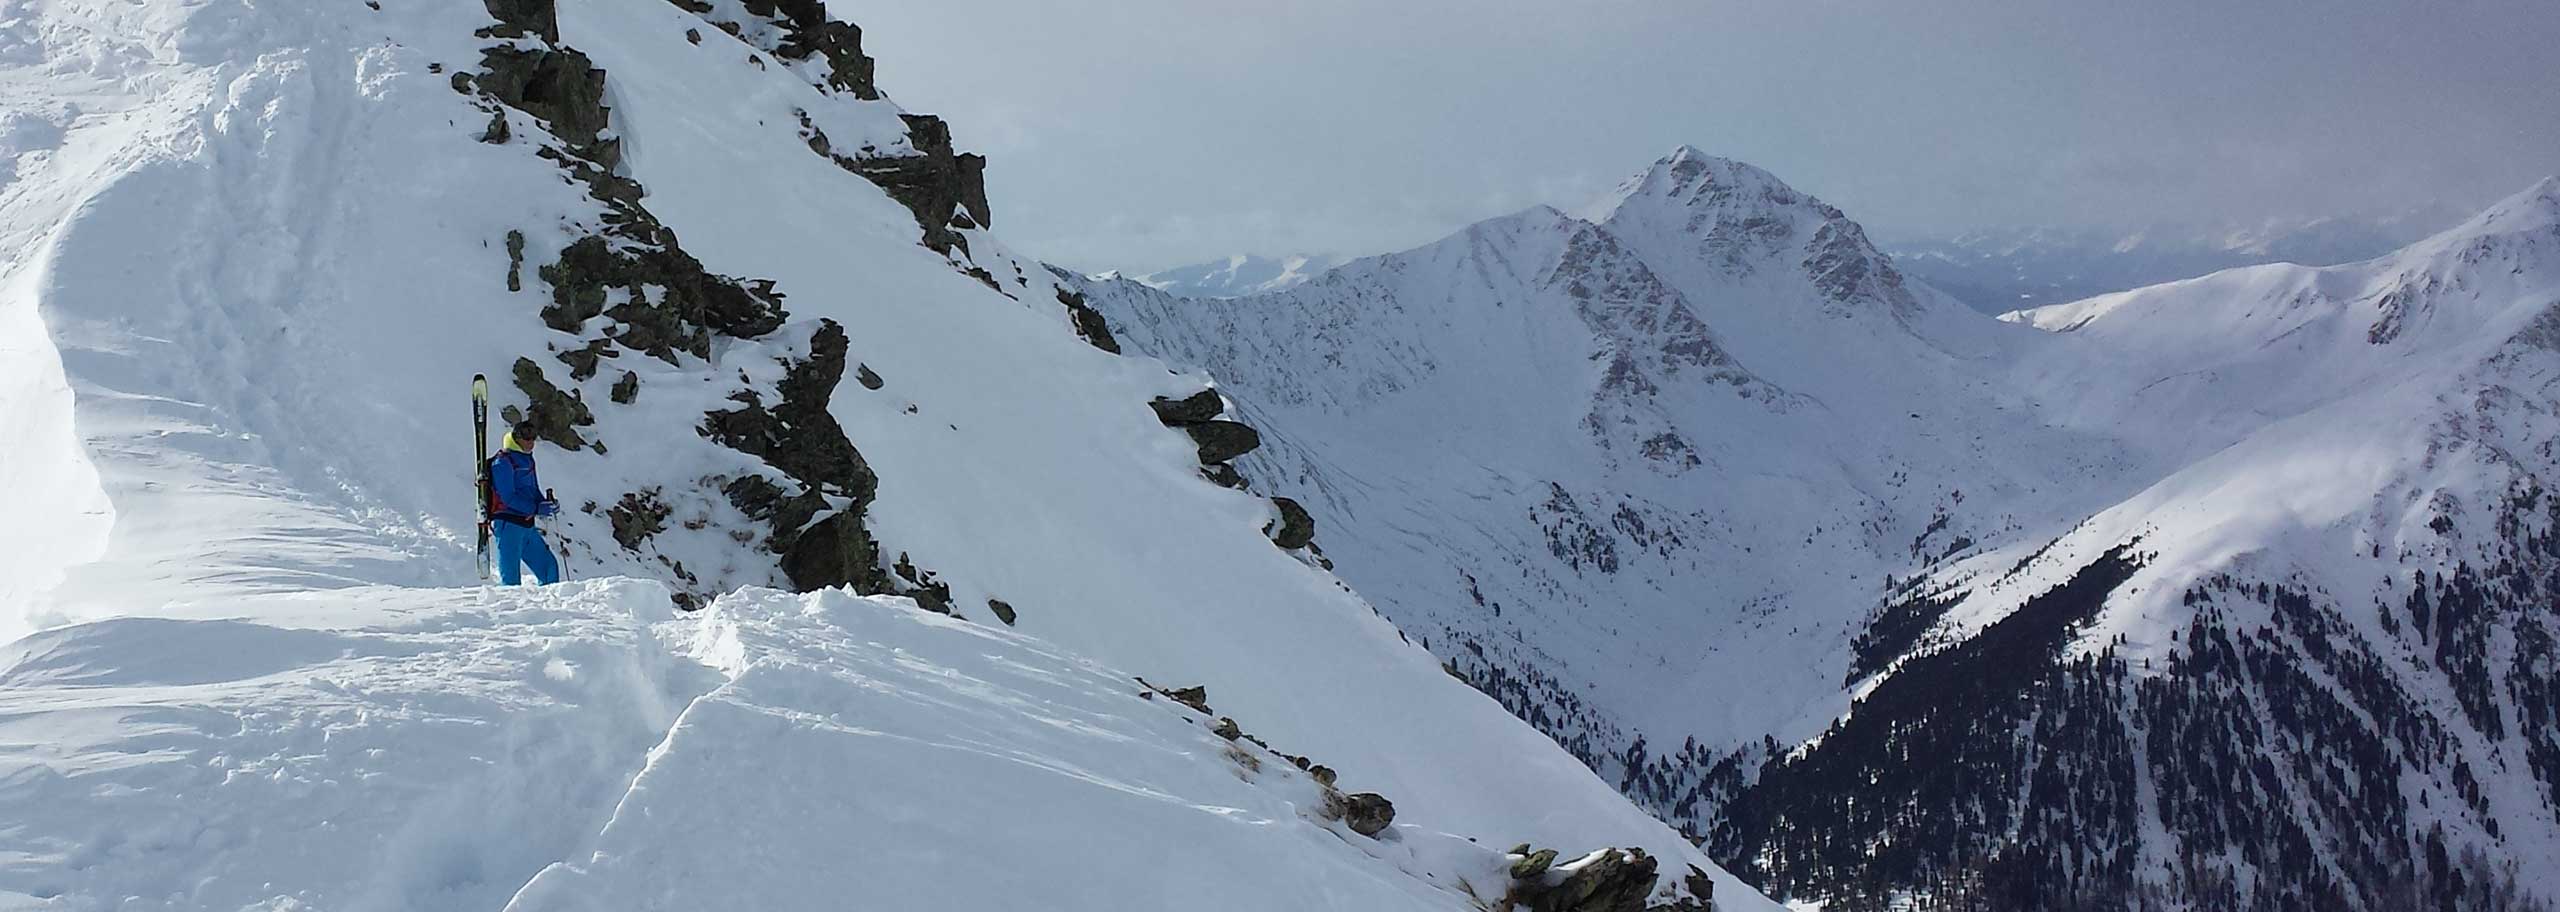 Sci Alpinismo in Val Casies, Escursioni e Corsi Sci Alpinistici